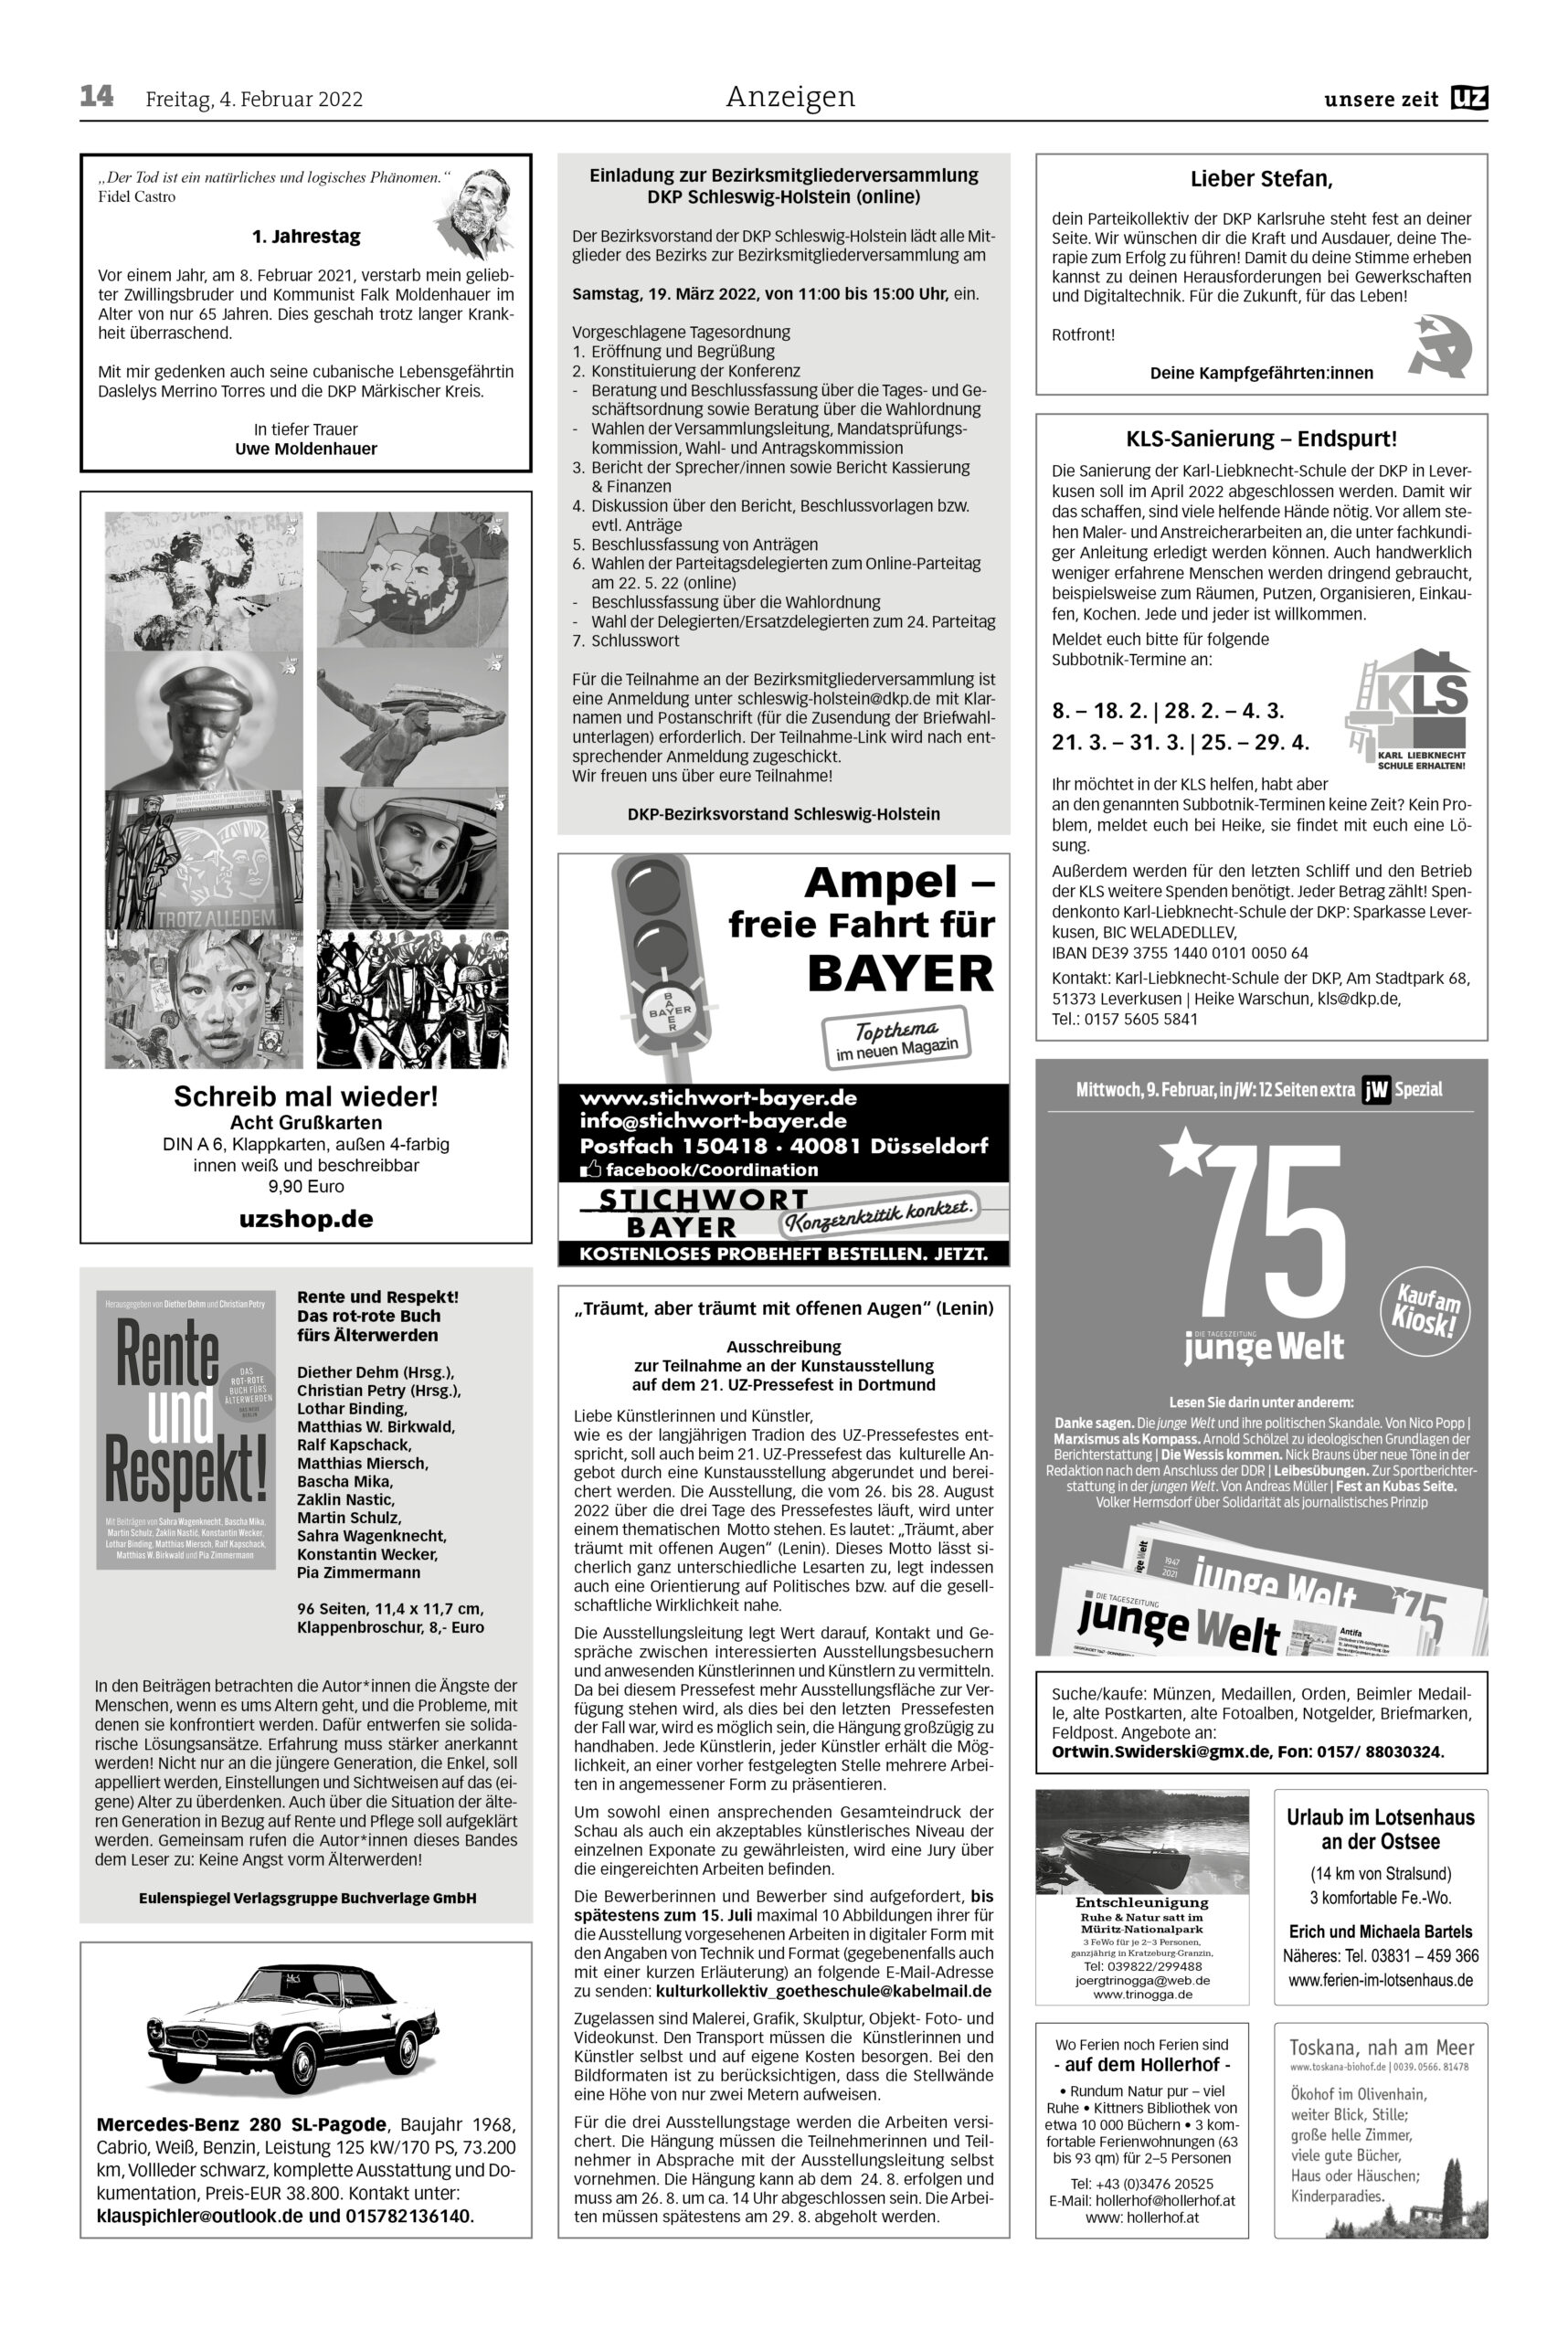 UZ 2022 05 Seite 14 scaled - Anzeigen 2022-05 - Anzeigen - Anzeigen